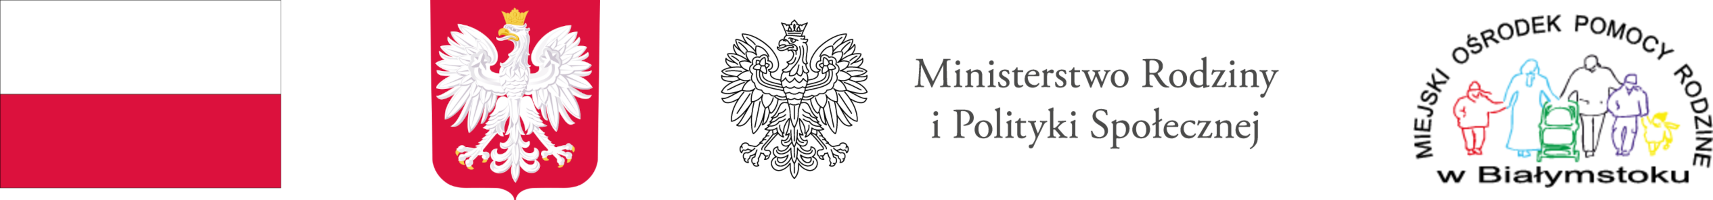 Flaga i godło Polski, logo MRiPS, logo MOPR